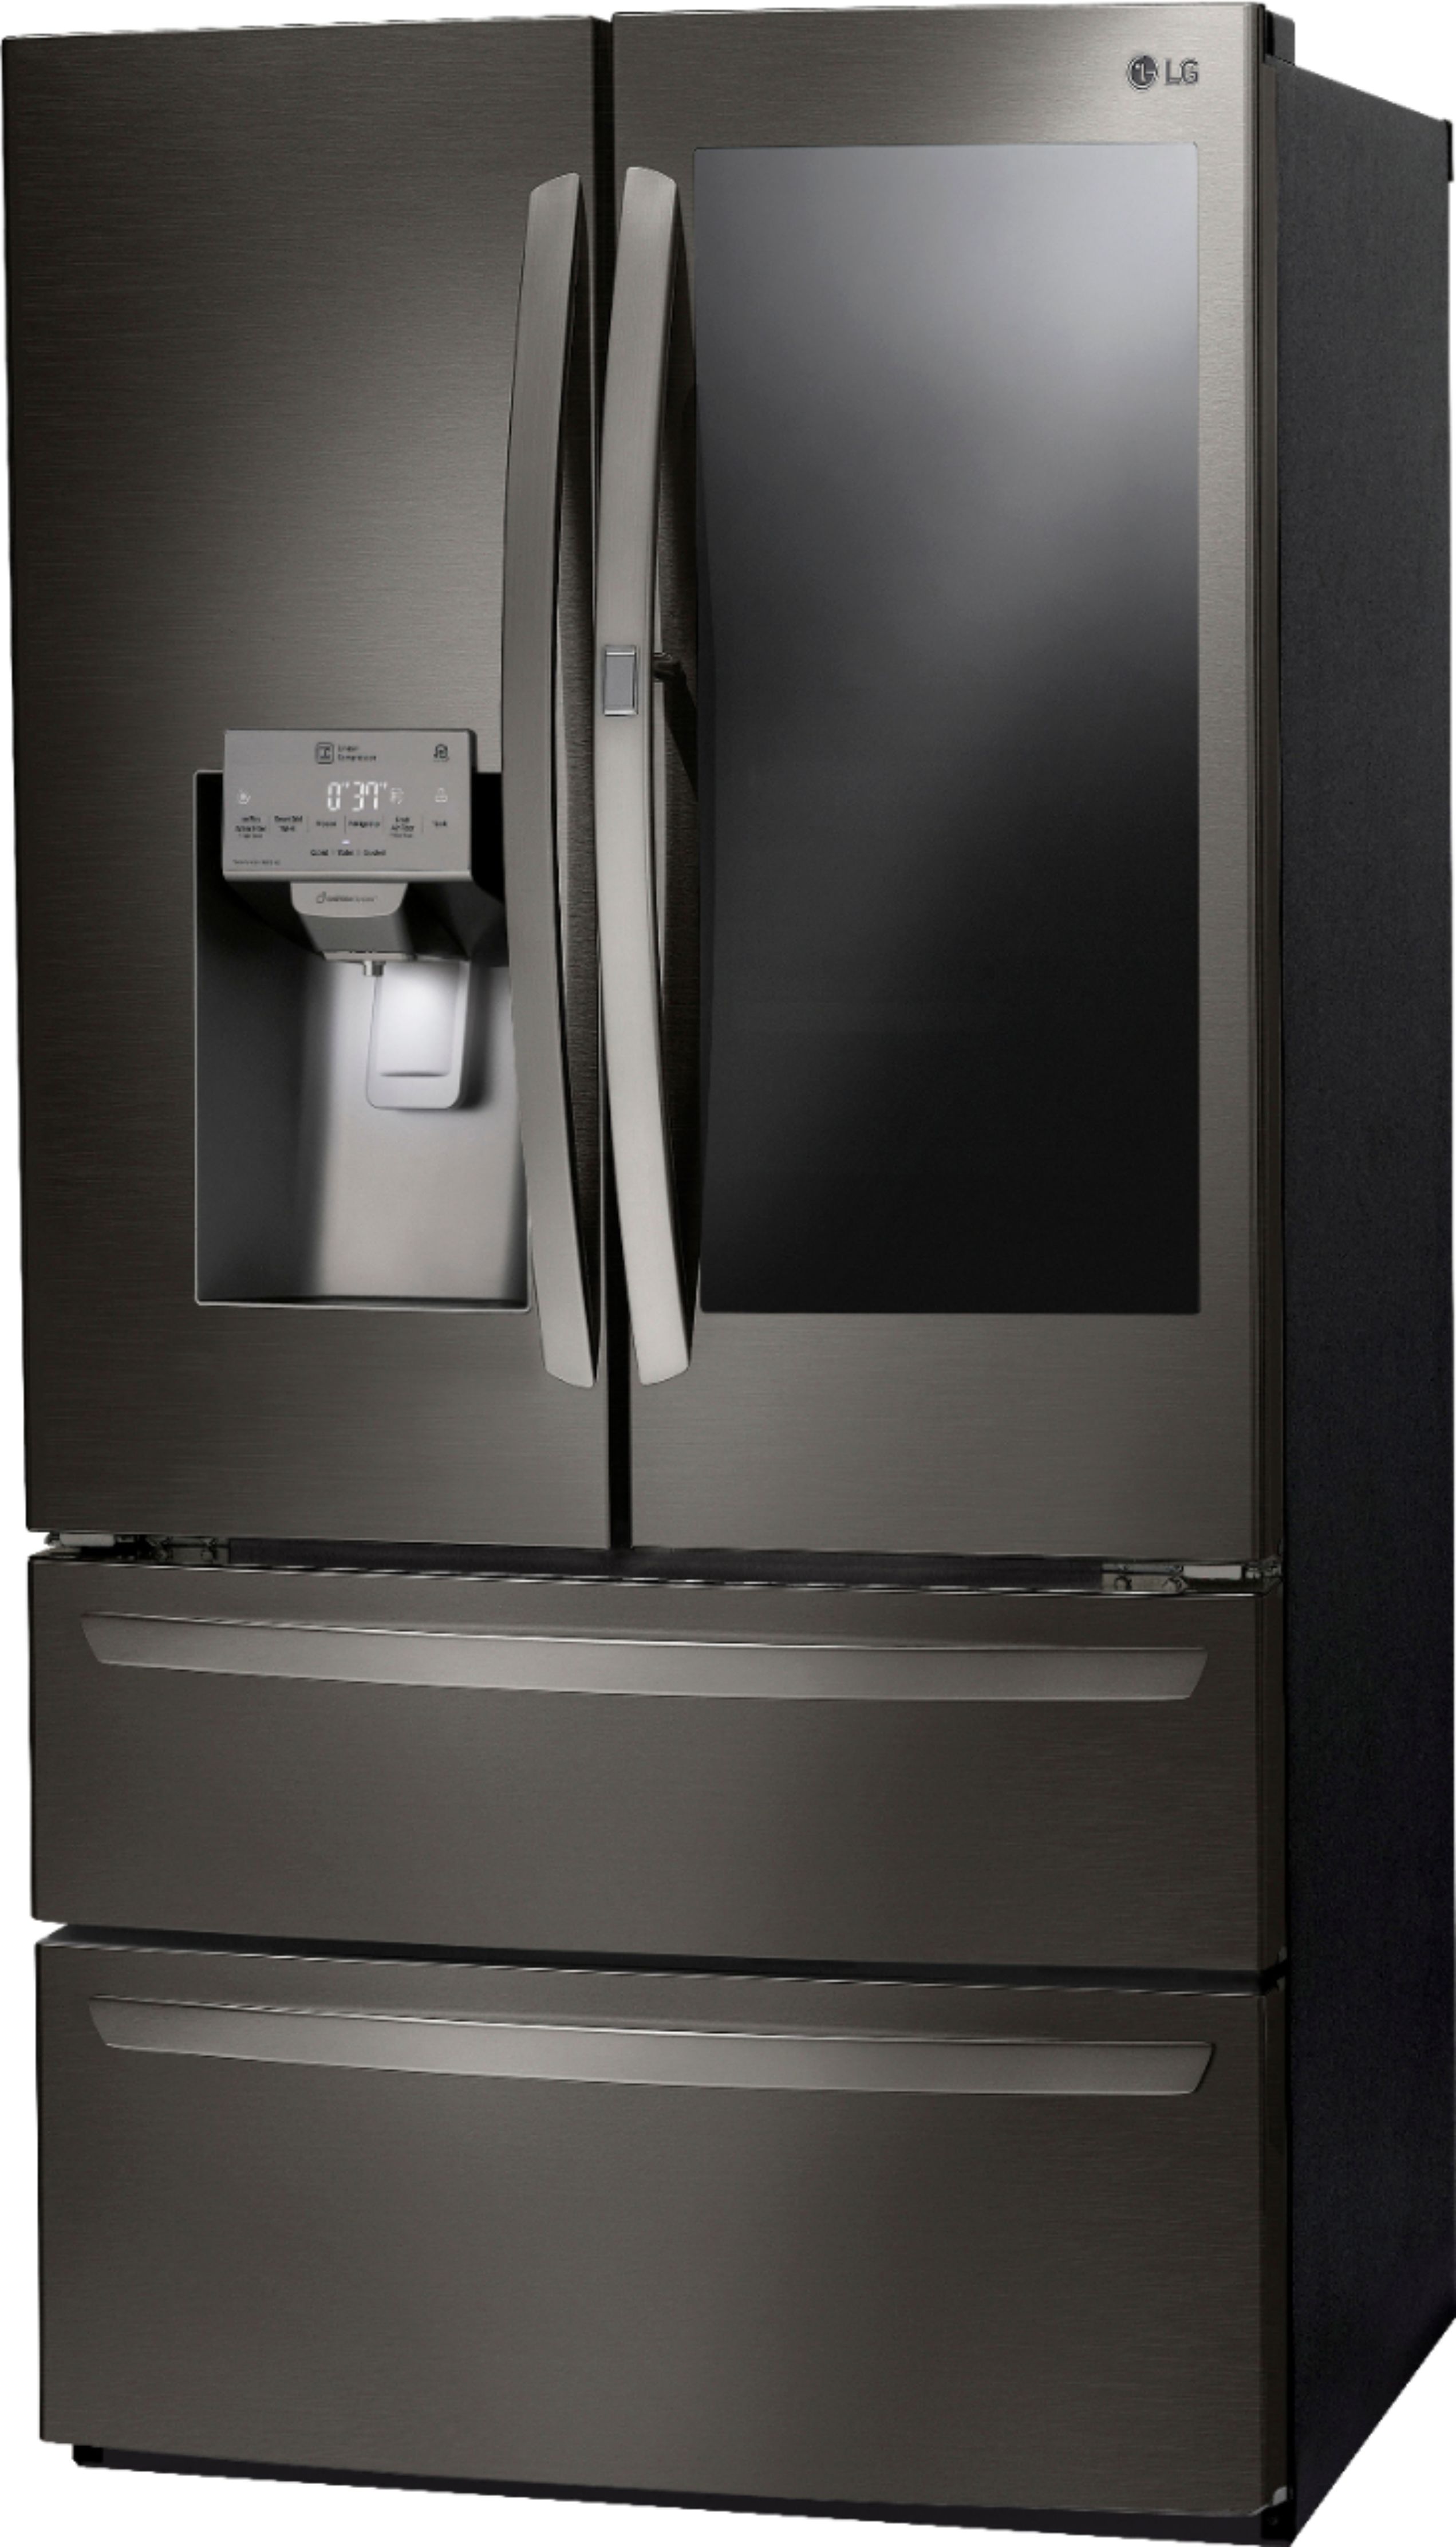 Left View: LG - InstaView Door-in-Door 27.8 Cu. Ft. 4-Door French Door Refrigerator - Black stainless steel